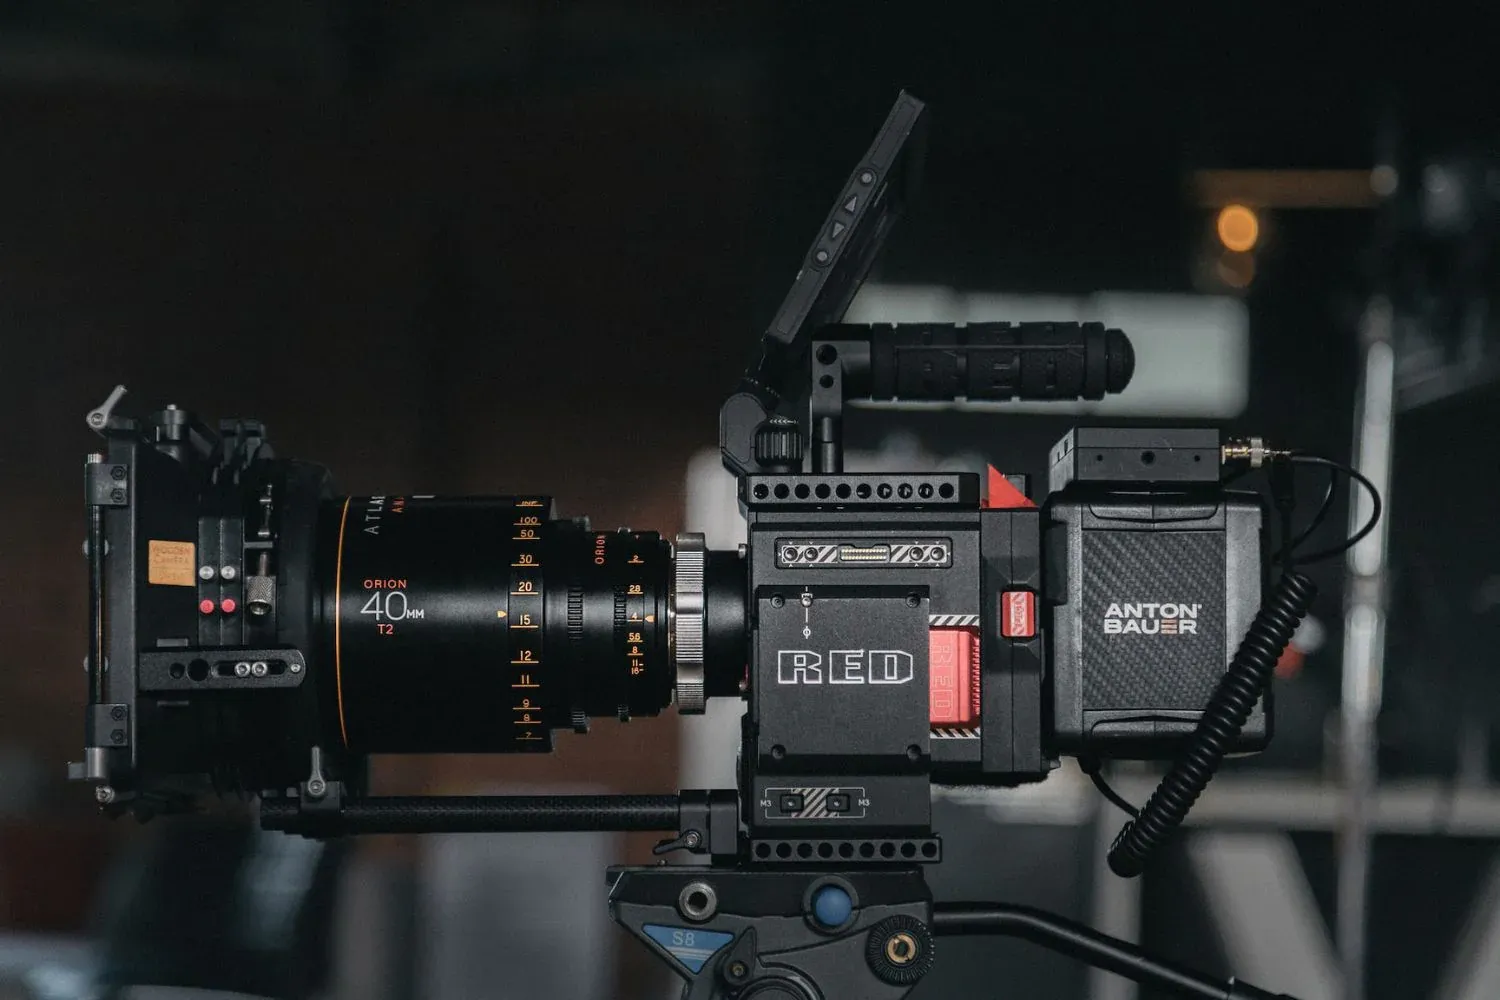 Nikon mua lại RED, thương hiệu máy quay phim cao cấp được các nhà làm phim yêu thích